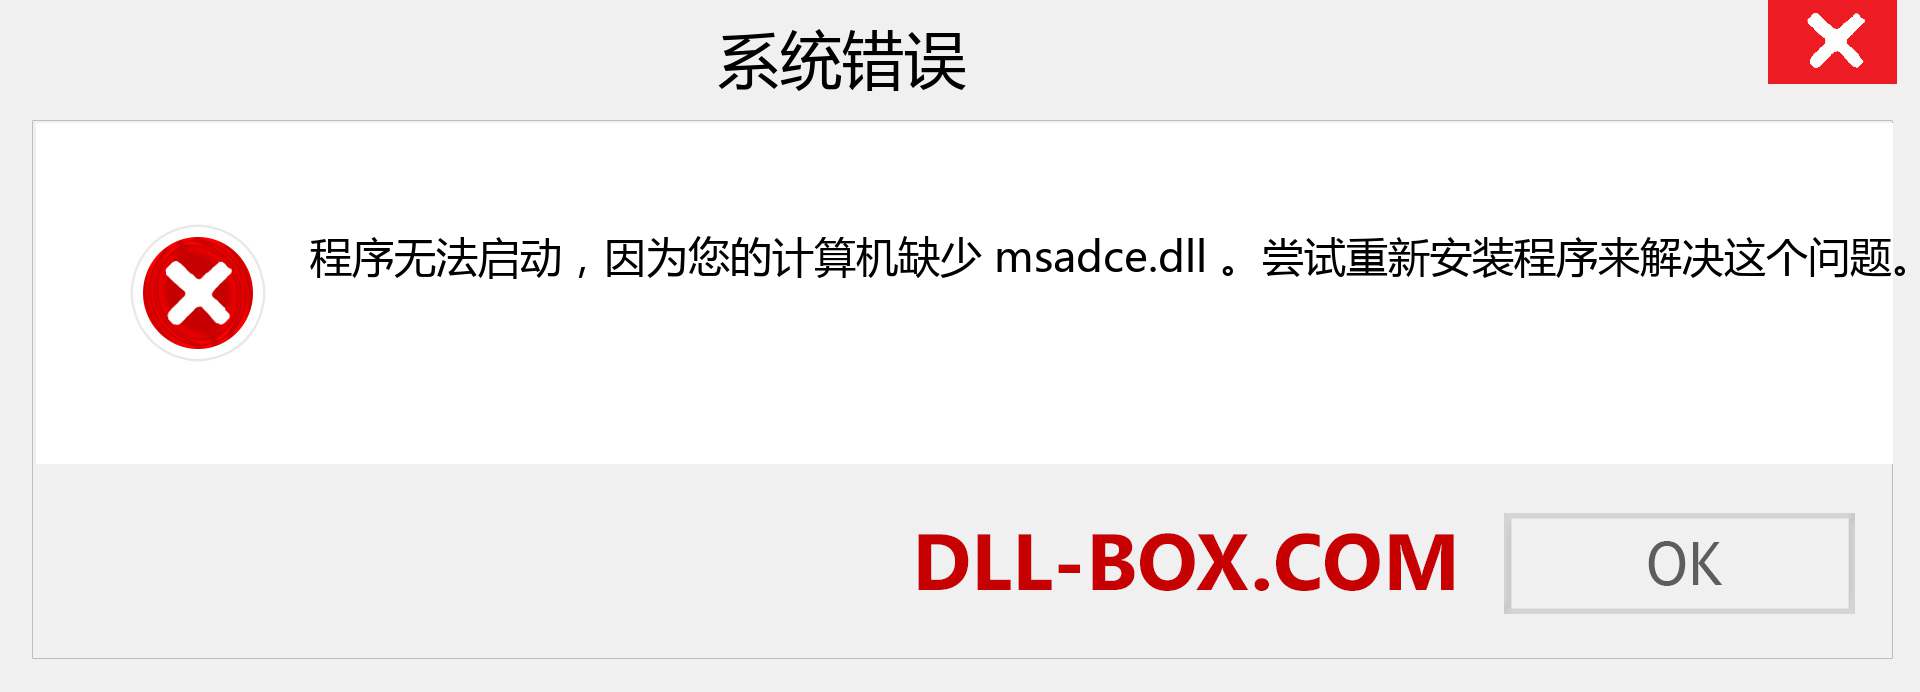 msadce.dll 文件丢失？。 适用于 Windows 7、8、10 的下载 - 修复 Windows、照片、图像上的 msadce dll 丢失错误